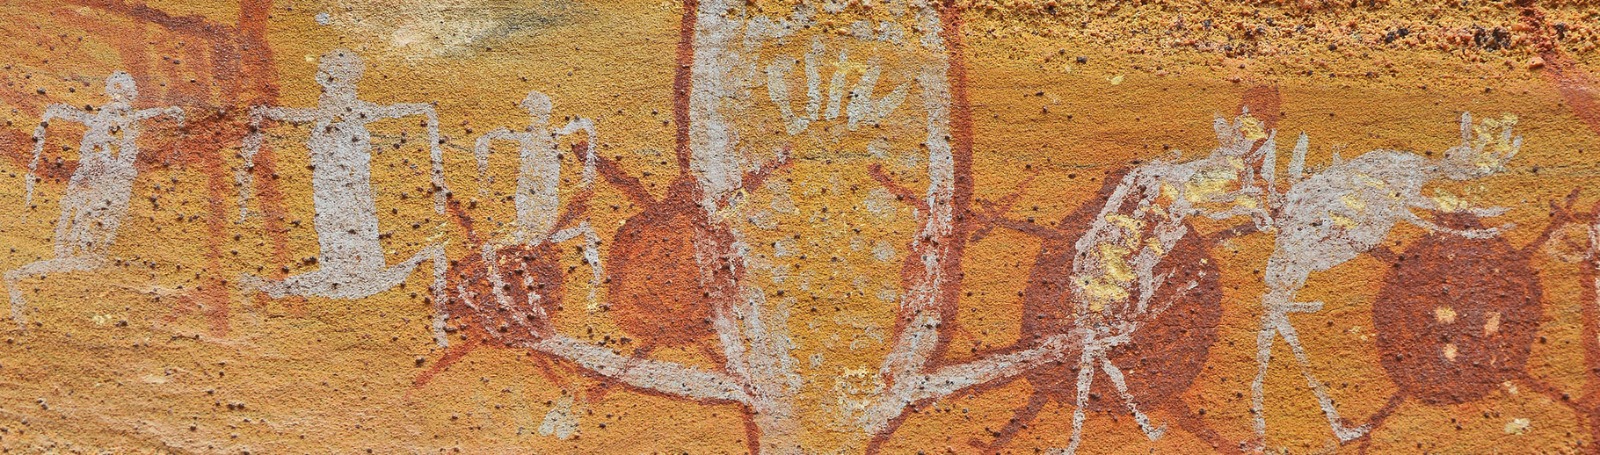 Pinturas rupestres com policromia